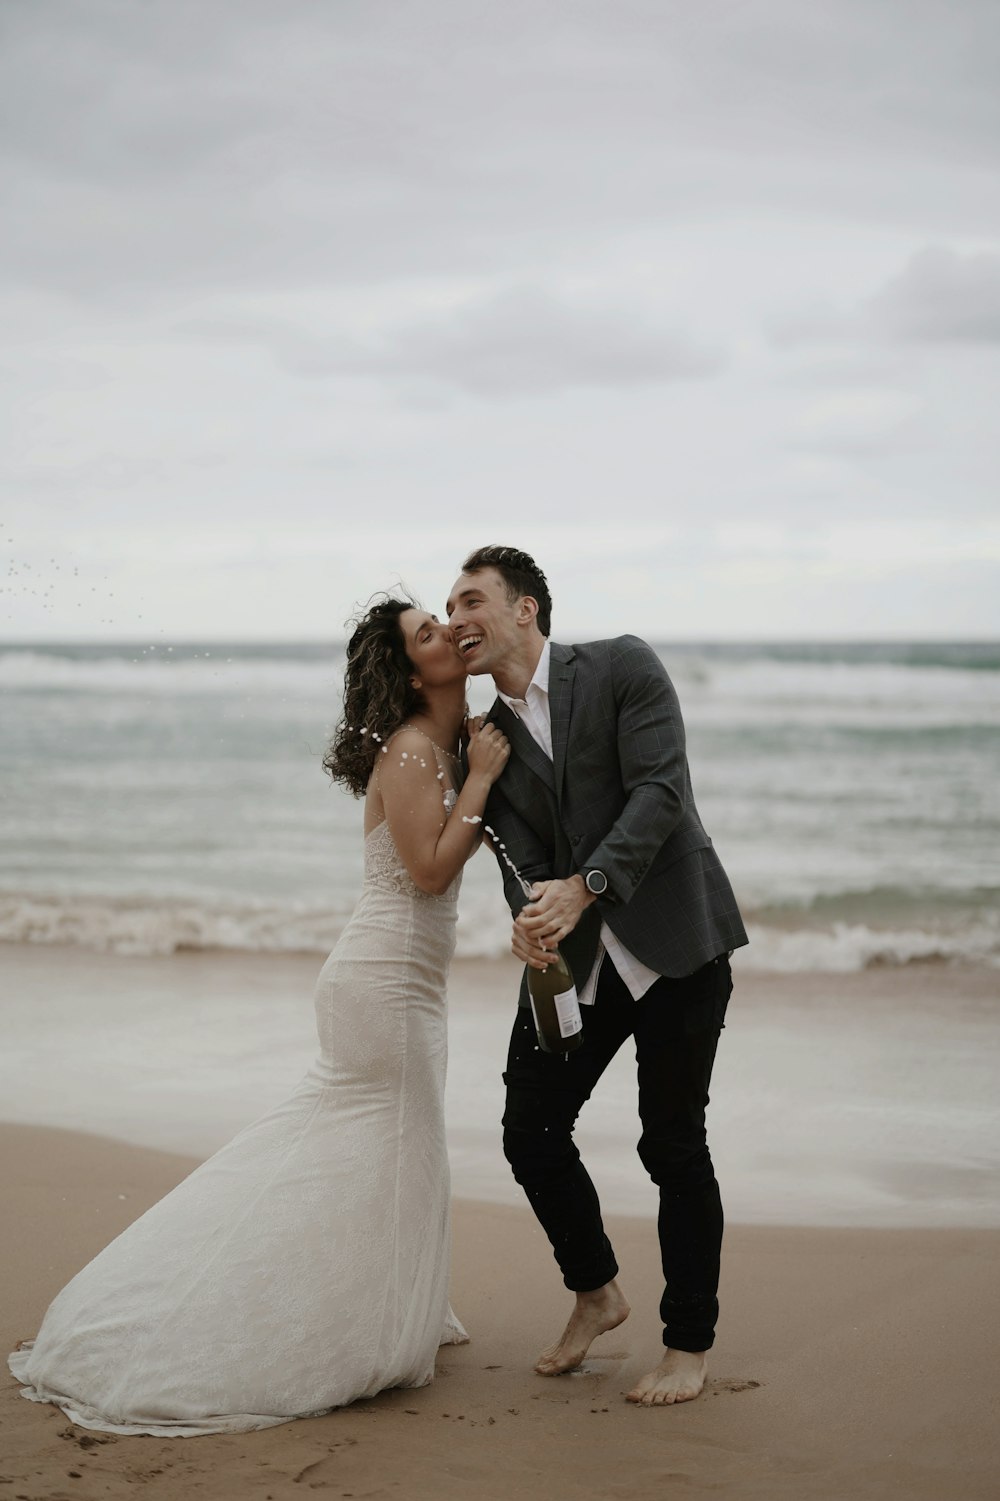 Ein frisch verheiratetes Paar küsst sich am Strand